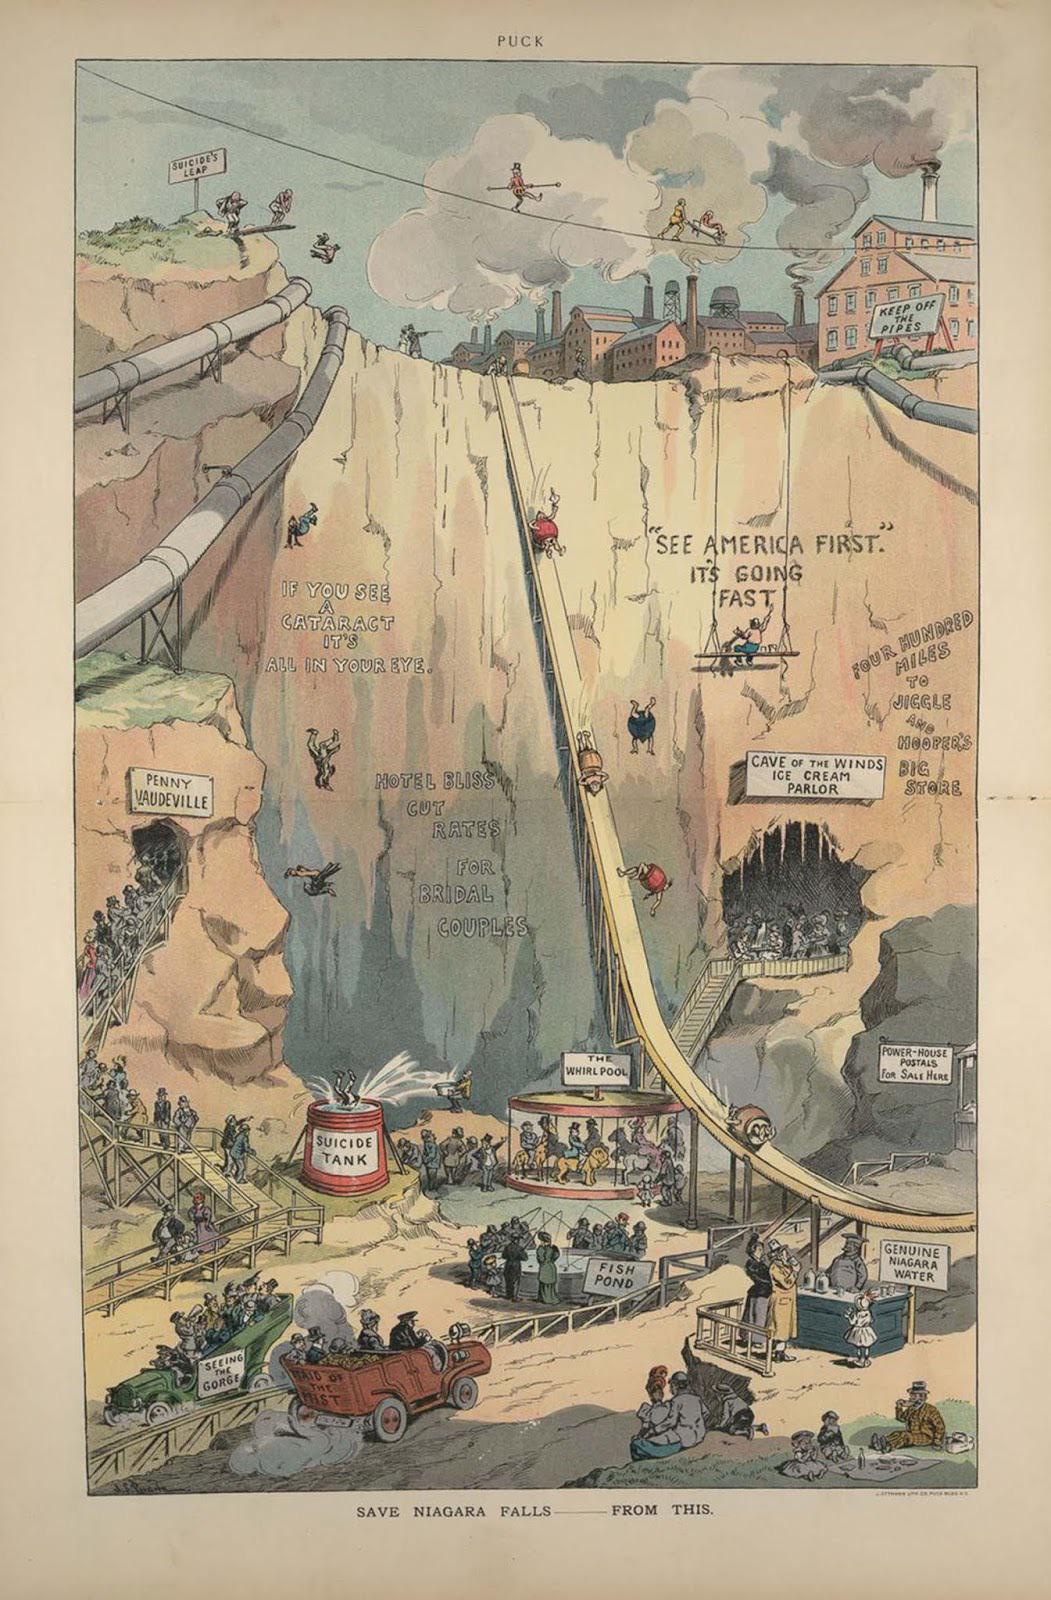 A satirical Puck illustration aimed at preserving Niagara Falls. 1906.jpg